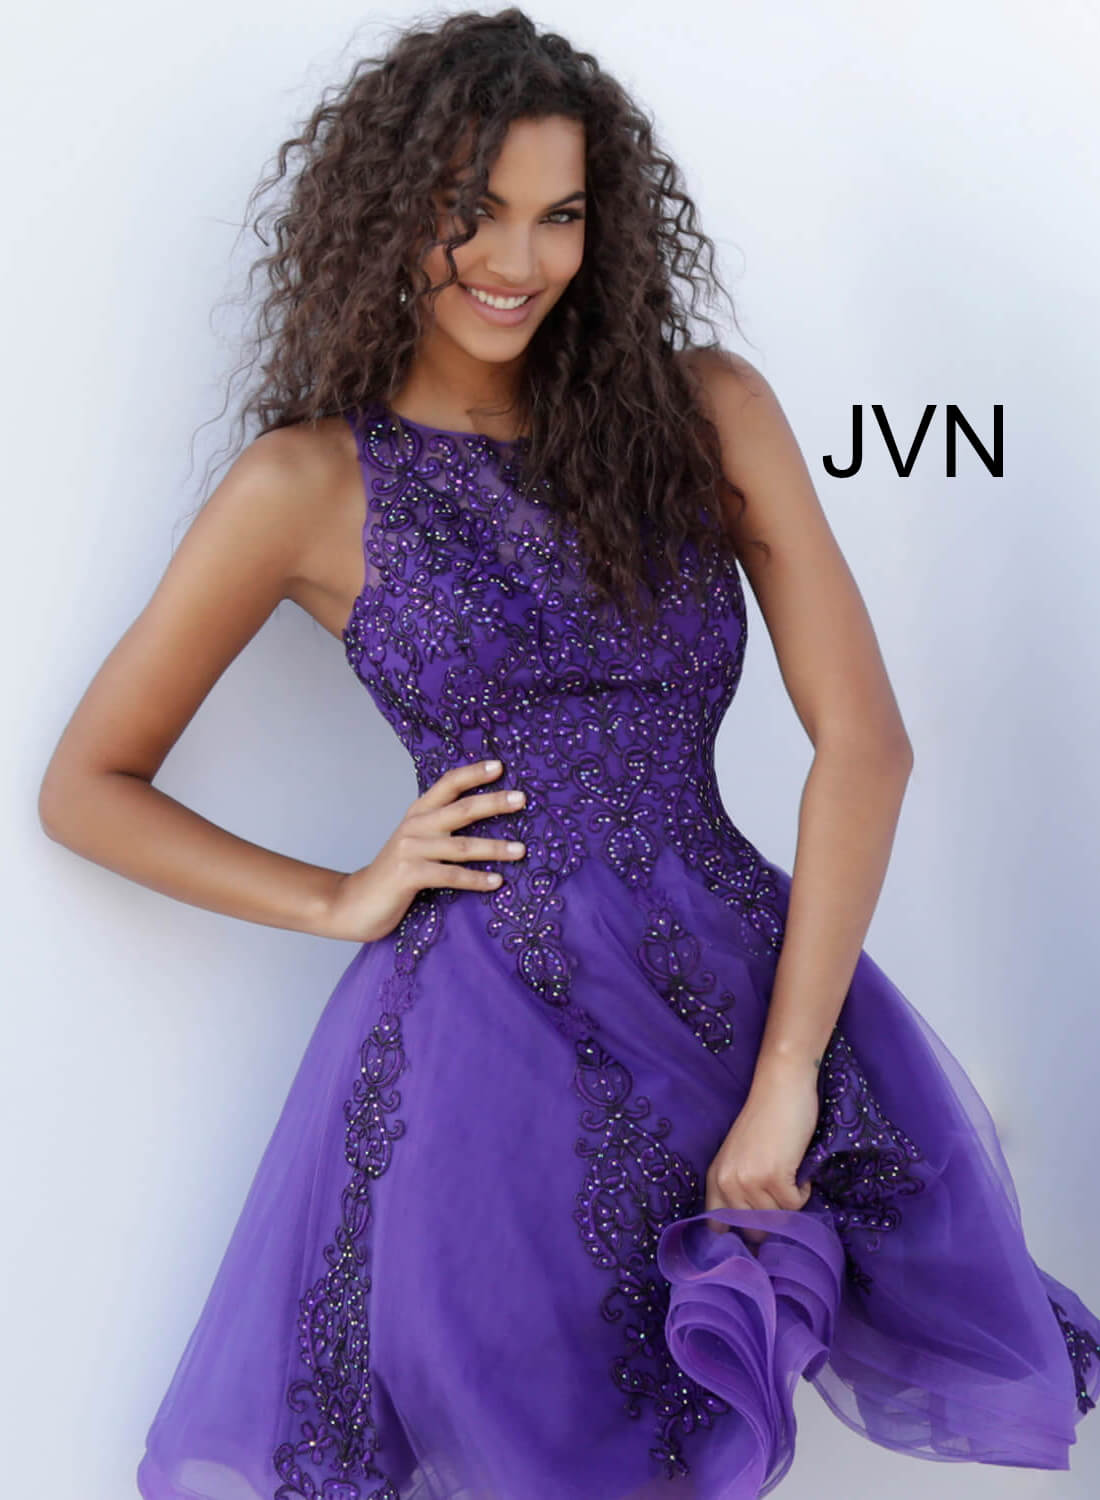 Jvn Dress Purple Sheer Short Homecoming Dress